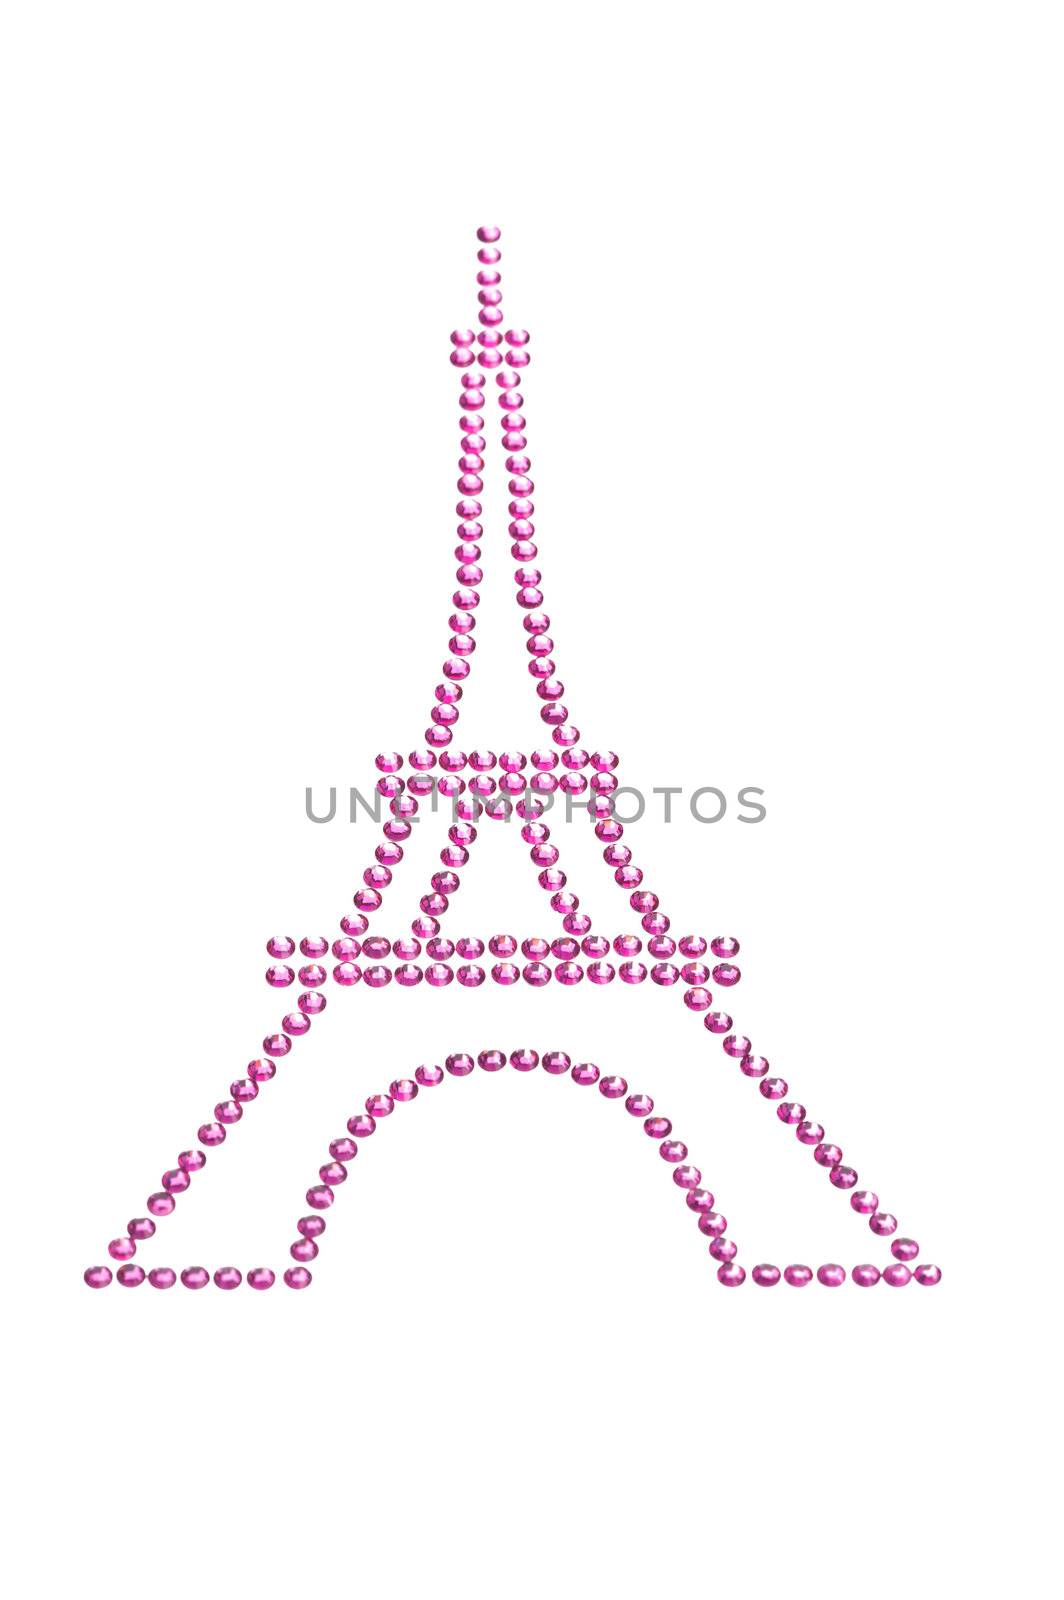 Eifel Tower in Pink made of Rhinestones by 3523Studio